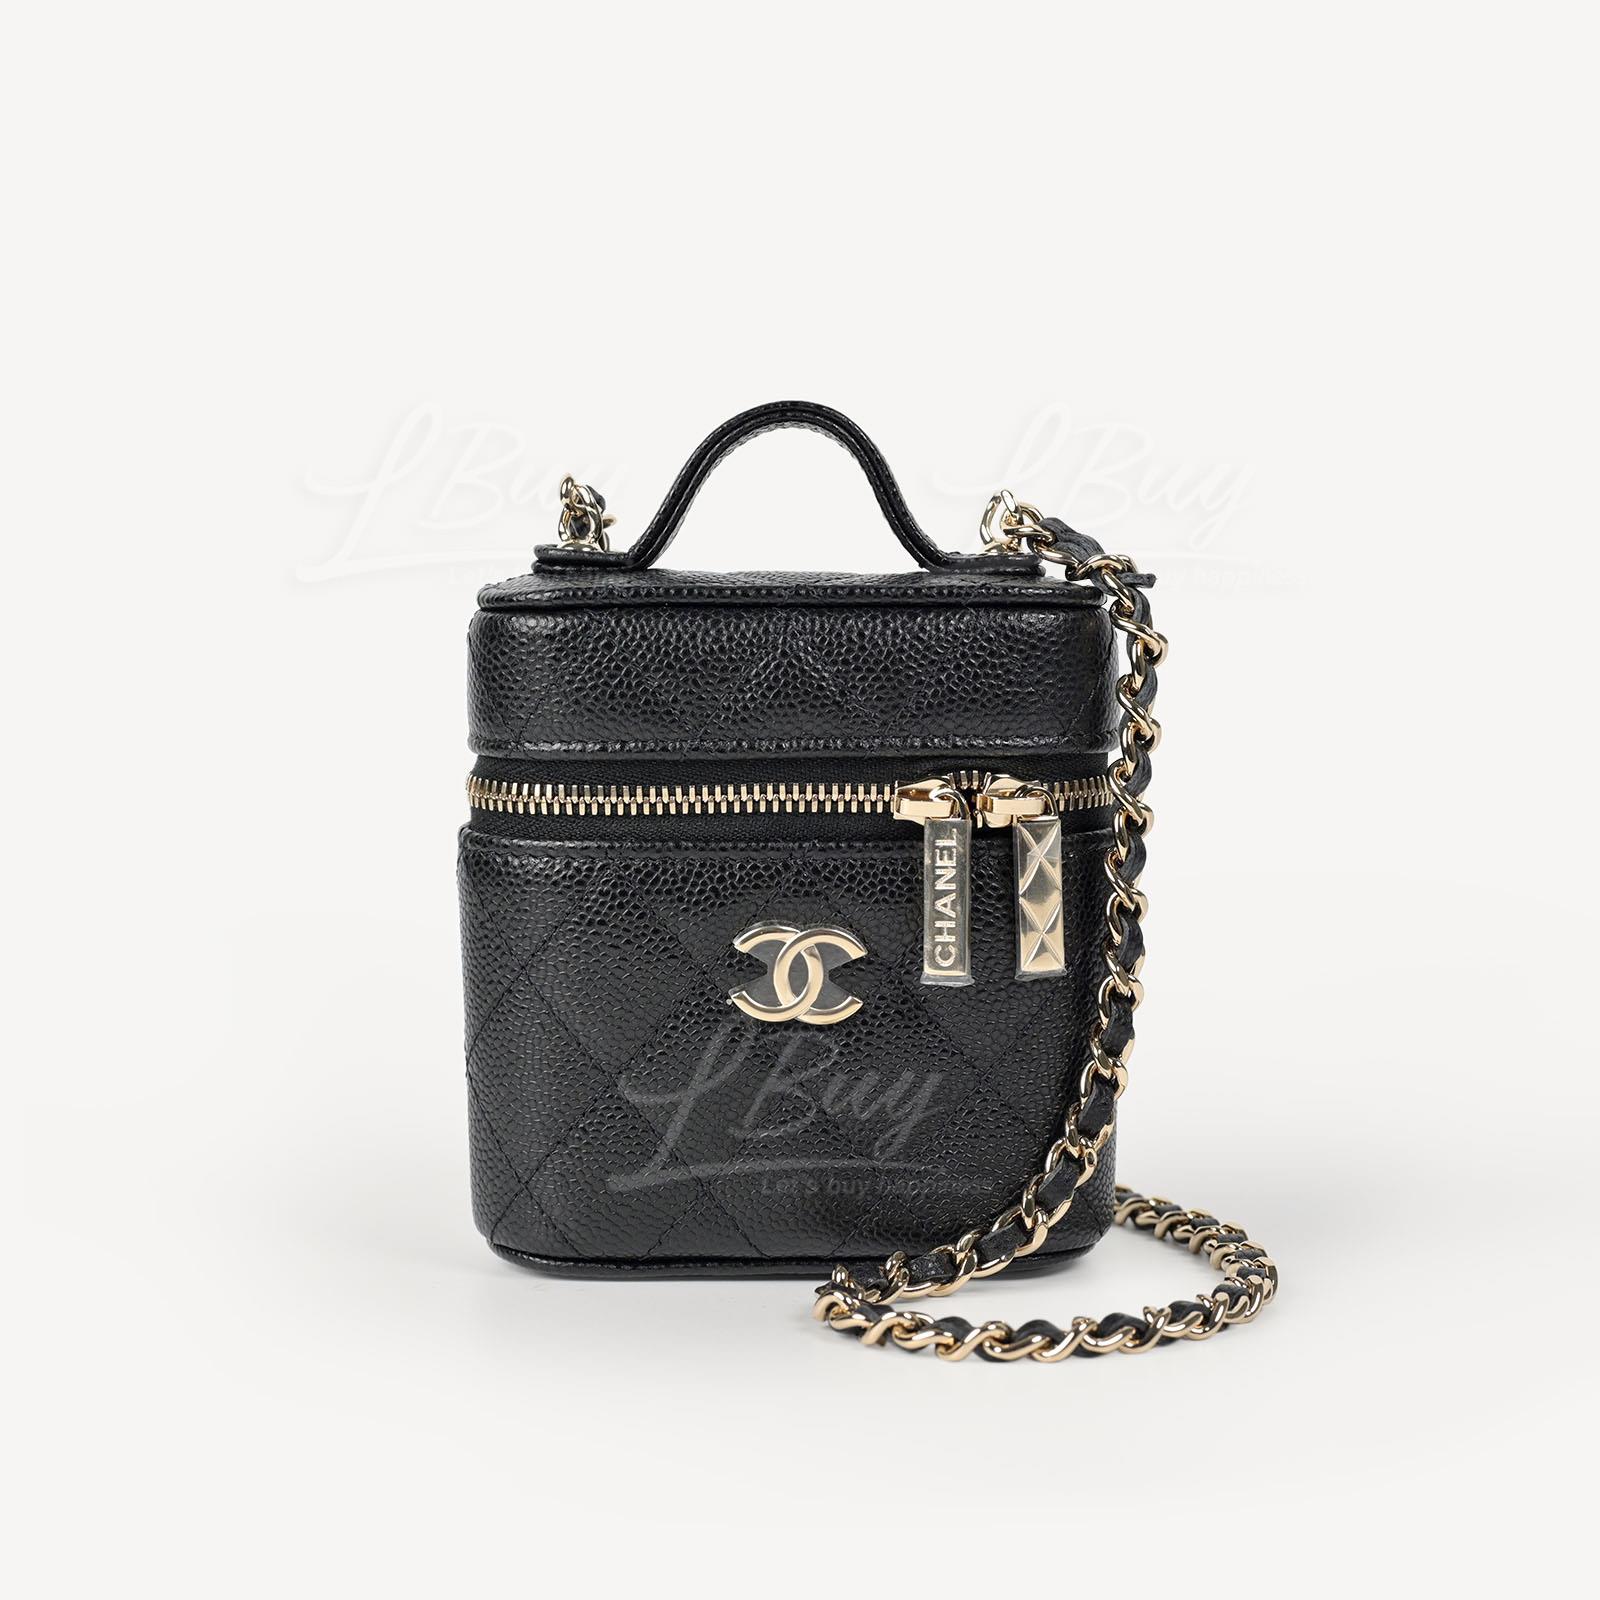 Chanel 細號黑色鏈子梳妝袋 AP2503